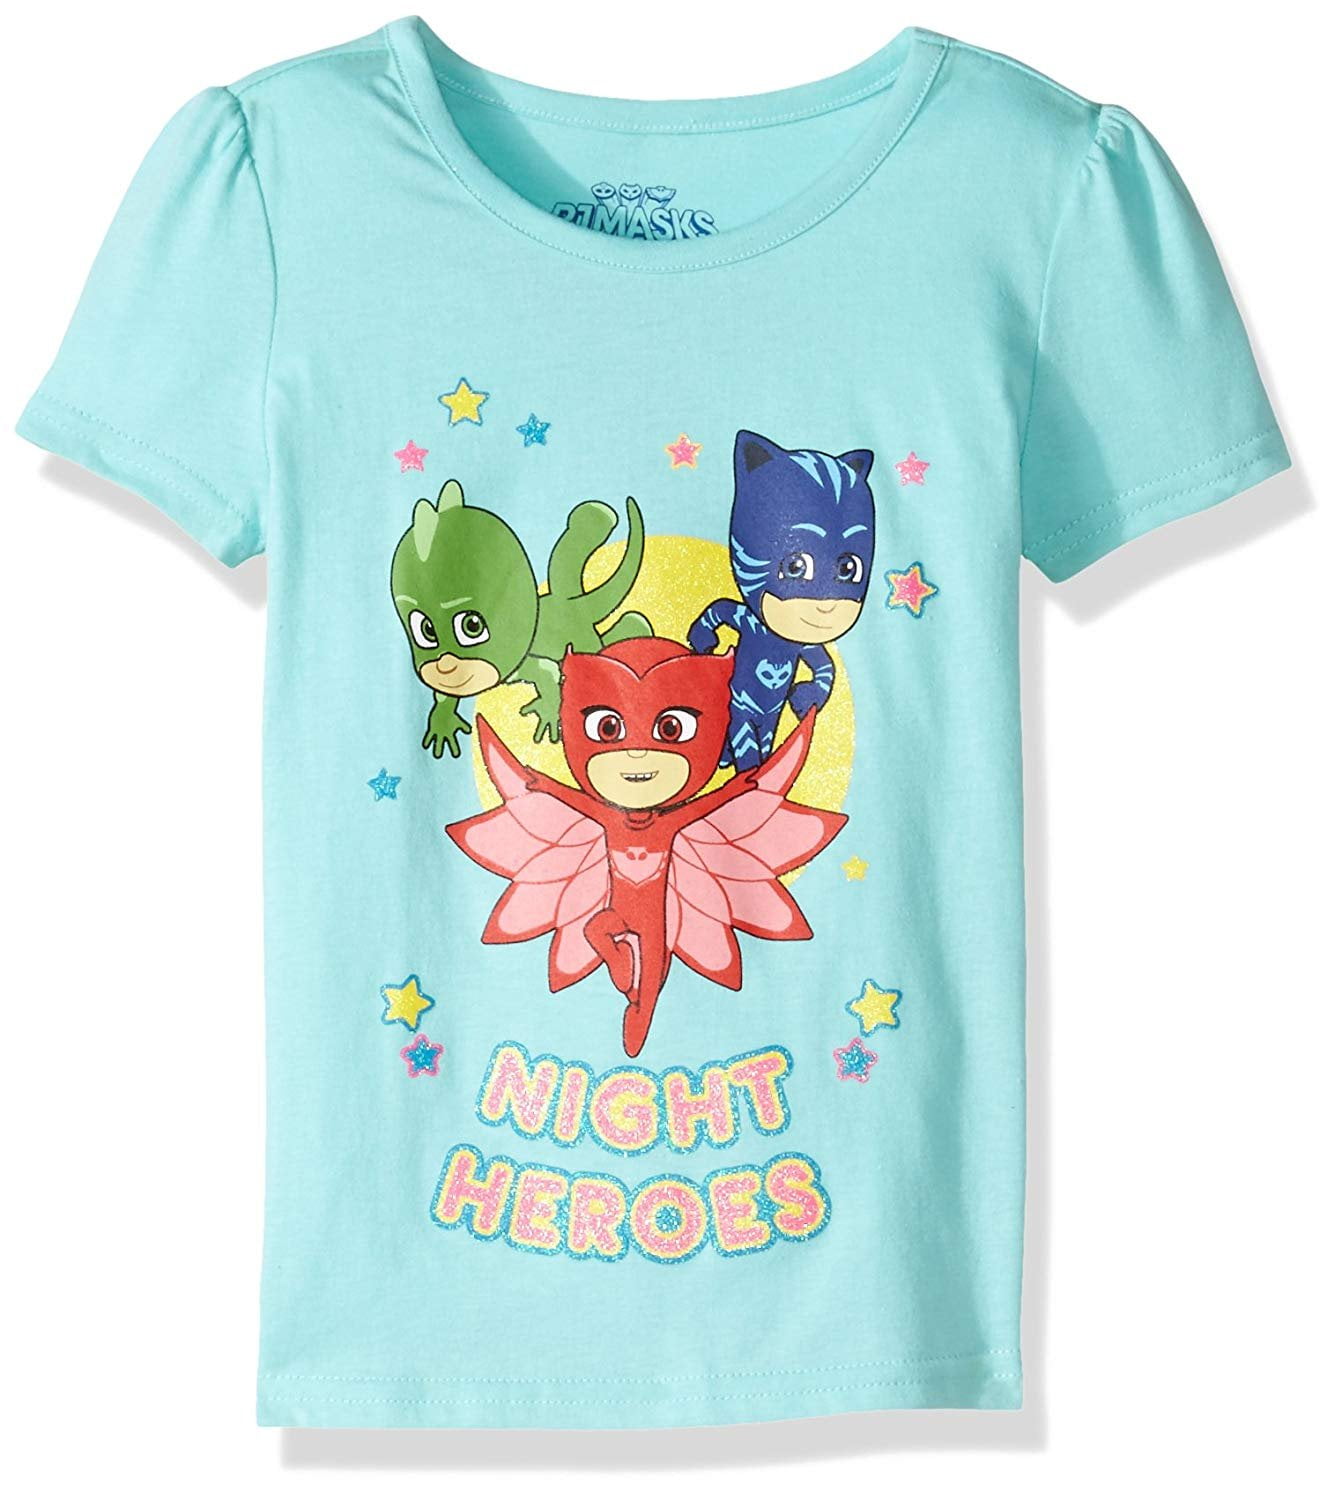 PJMASKS Little Girls' PJ Masks Short Sleeve Tee Shirt - Walmart.com ...